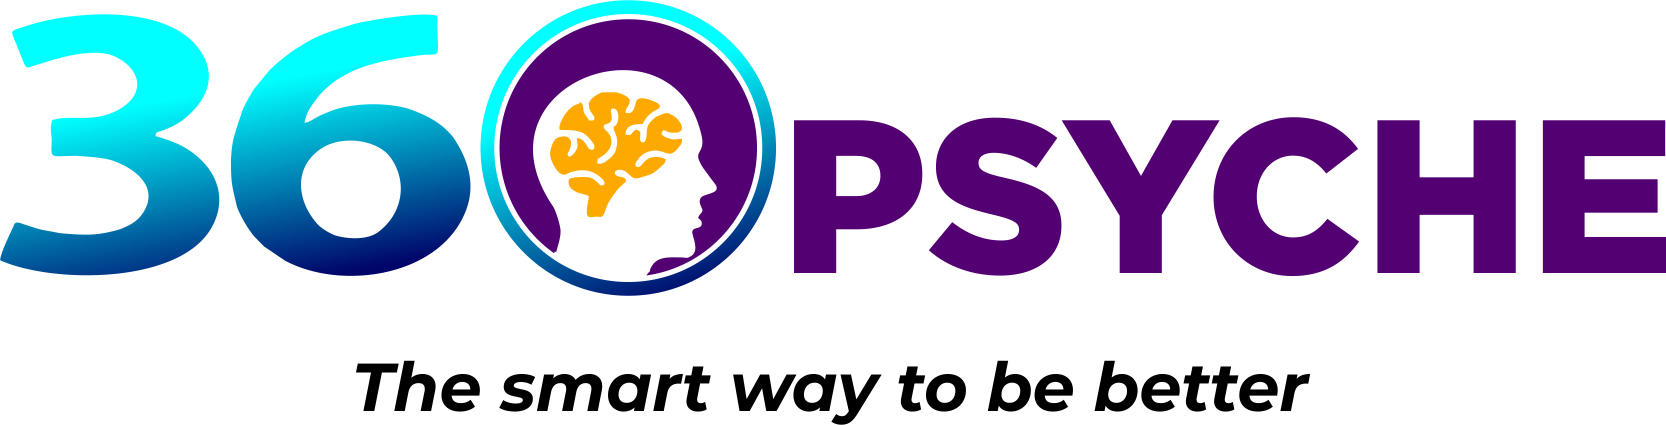 360 Psyche Logo